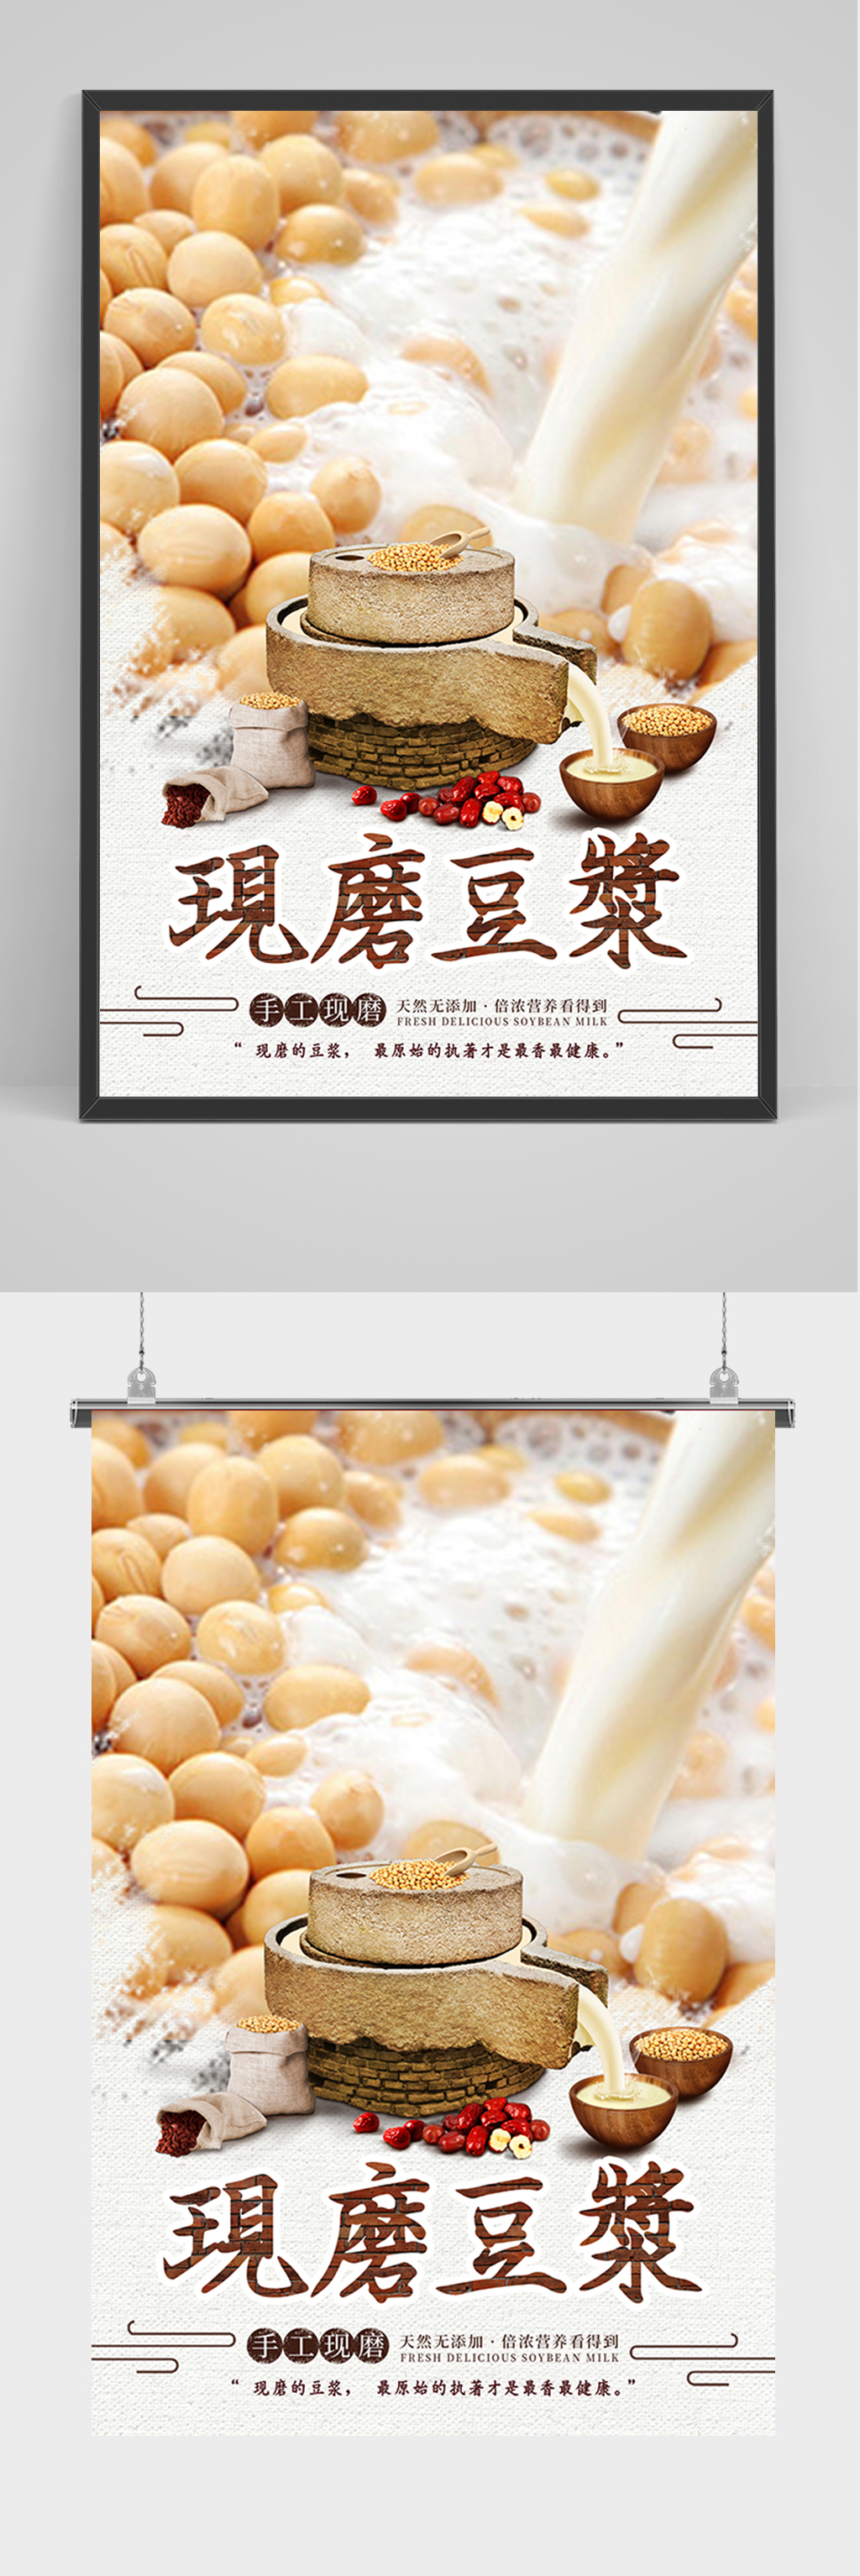 提供视觉美观的美食现磨豆浆海报素材下载,本次作品主题是平面广告